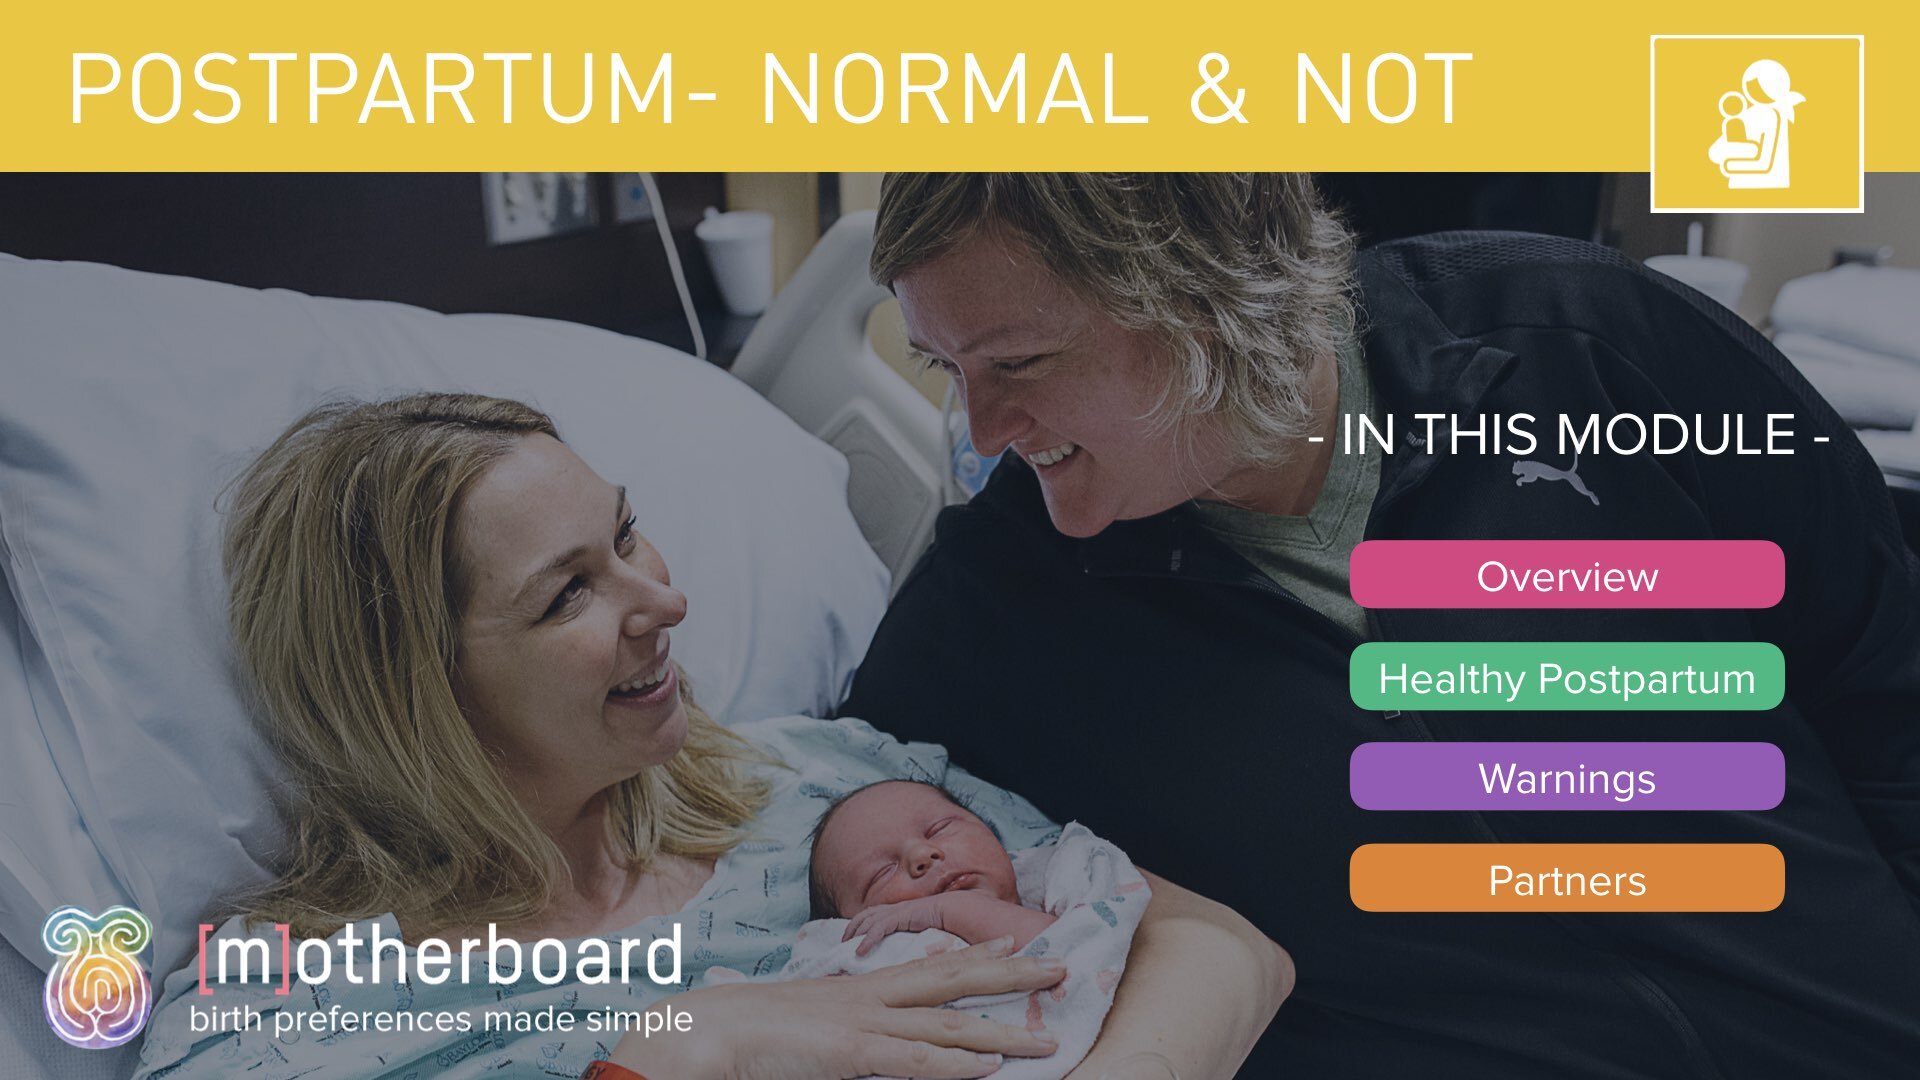 Slideshow Images - Postpartum - Normal vs Warning Signs.001.jpeg